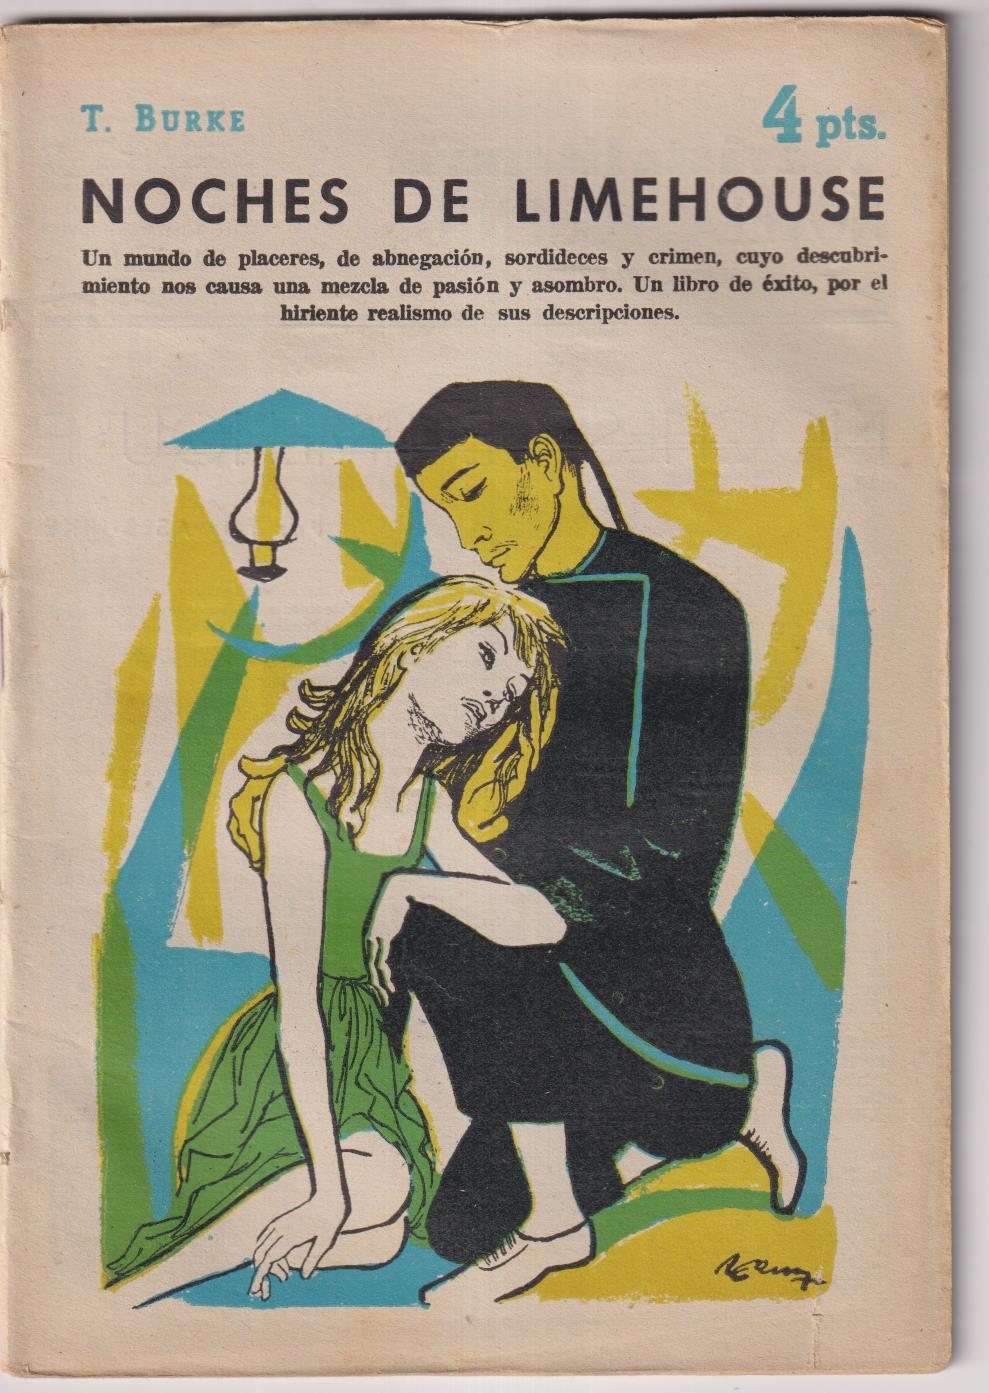 Revista Literaria Novelas y cuentos nº 1438. T. Burke. Noches de Limehouse. Año 1958